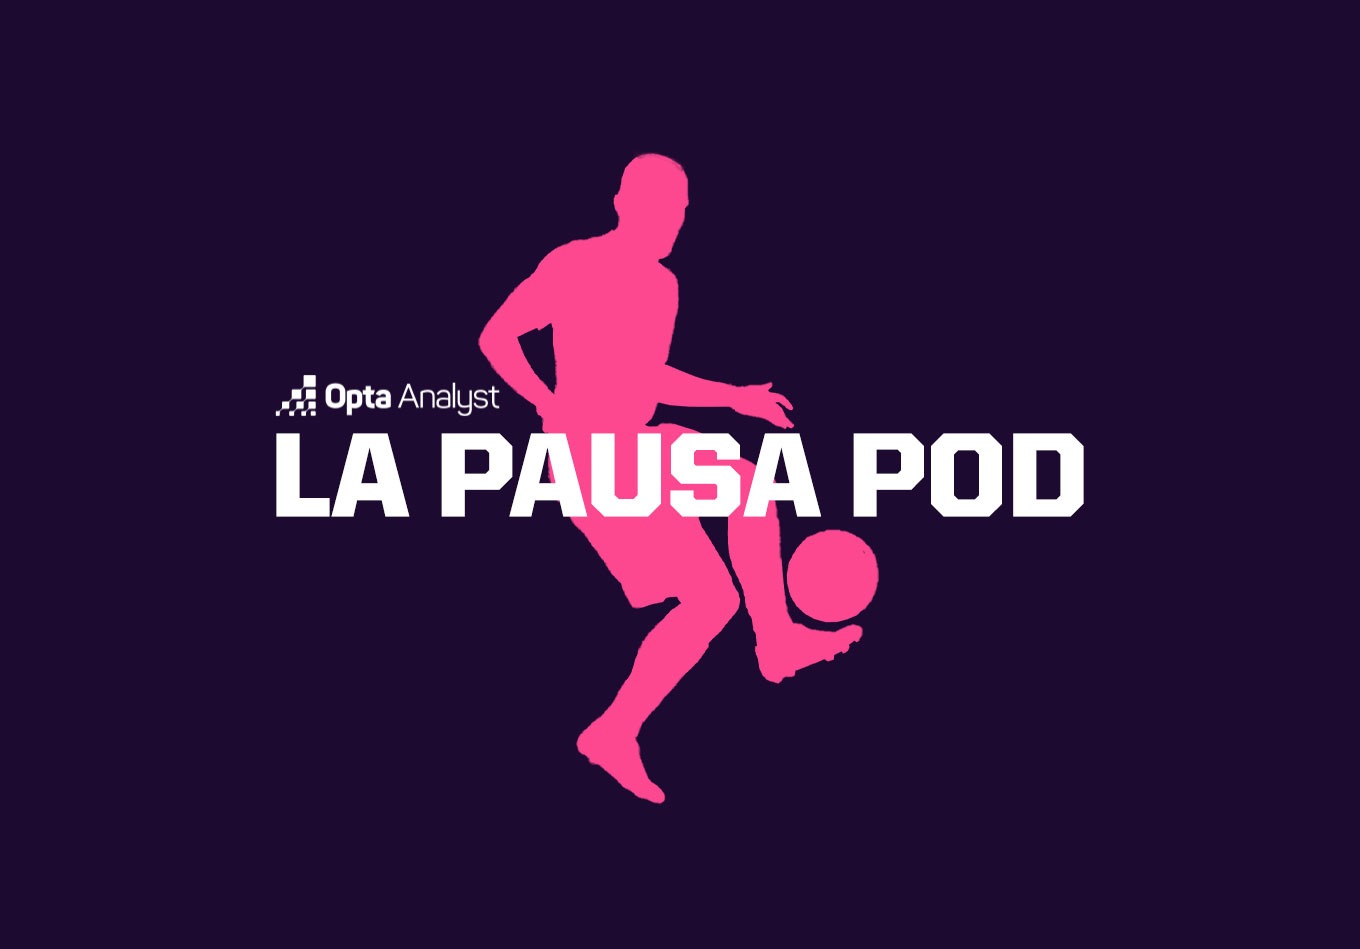 Total Football Podcast on Las Palmas, Girona and Barcelona